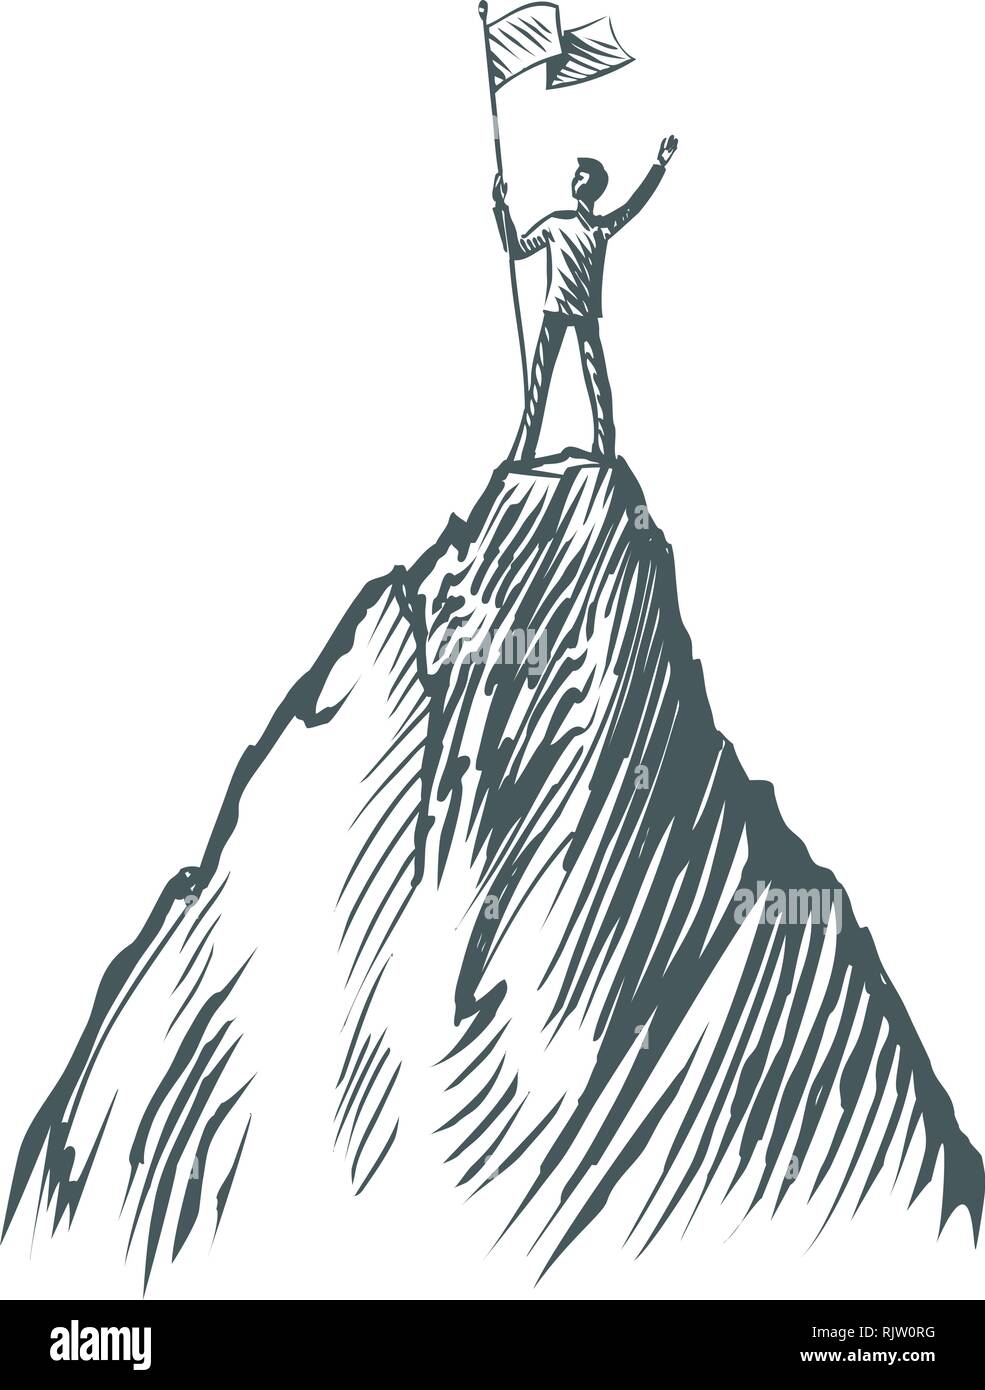 Erfolg im Geschäft, das Konzept. Unternehmer stehen mit einer Flagge auf dem Gipfel eines Berges. Skizze Vector Illustration Stock Vektor